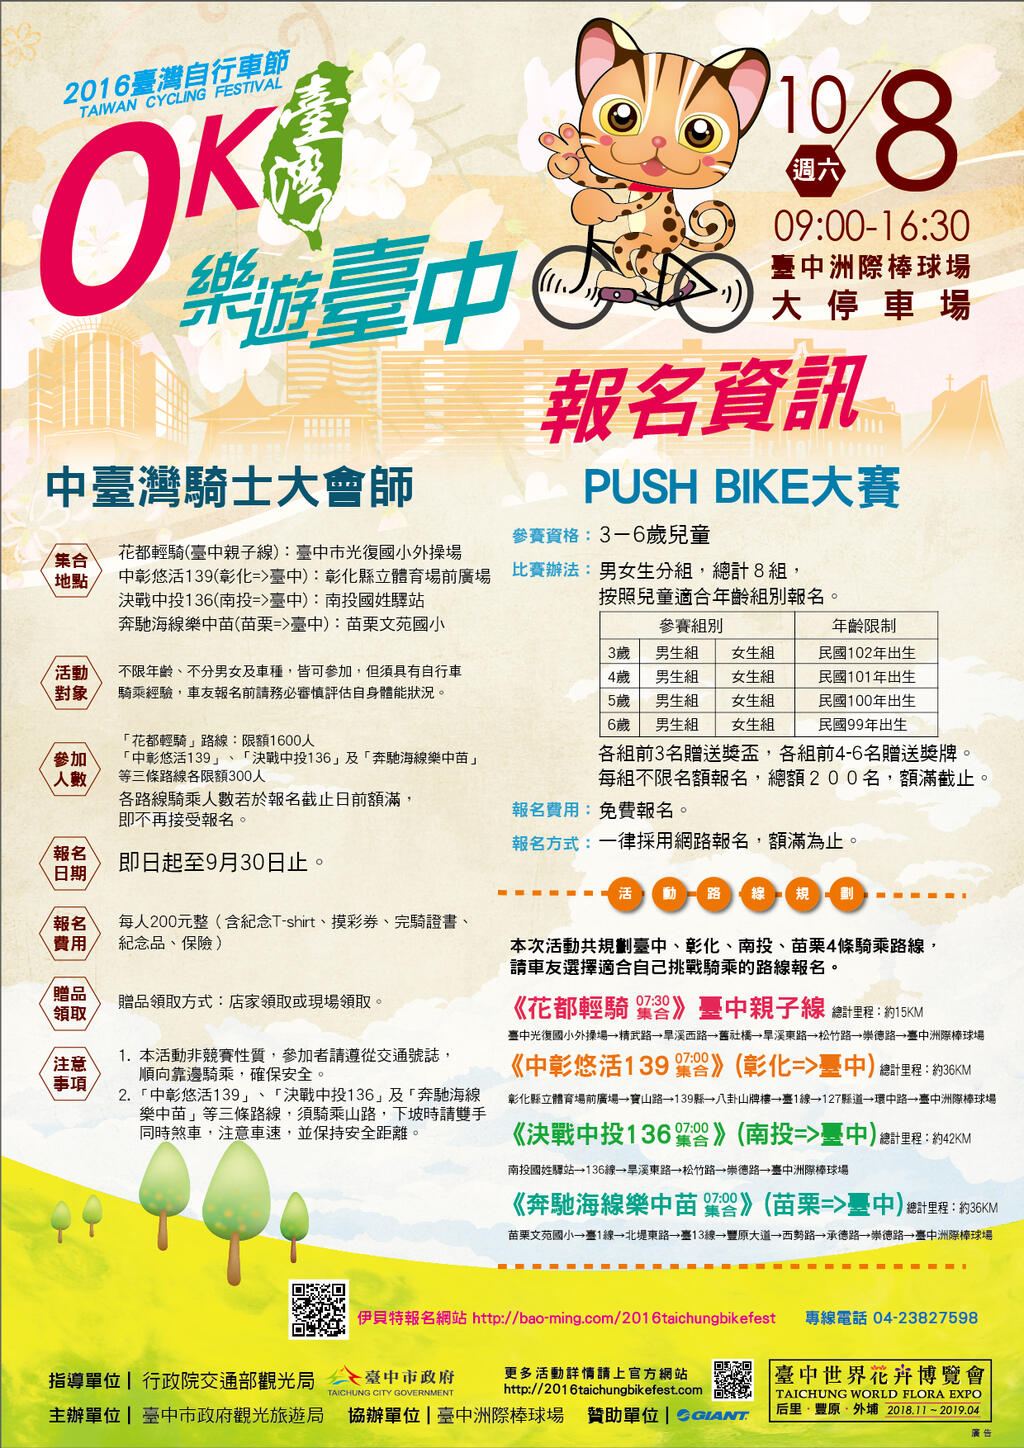 0K台湾 乐游台中自行车嘉年华 报名资讯